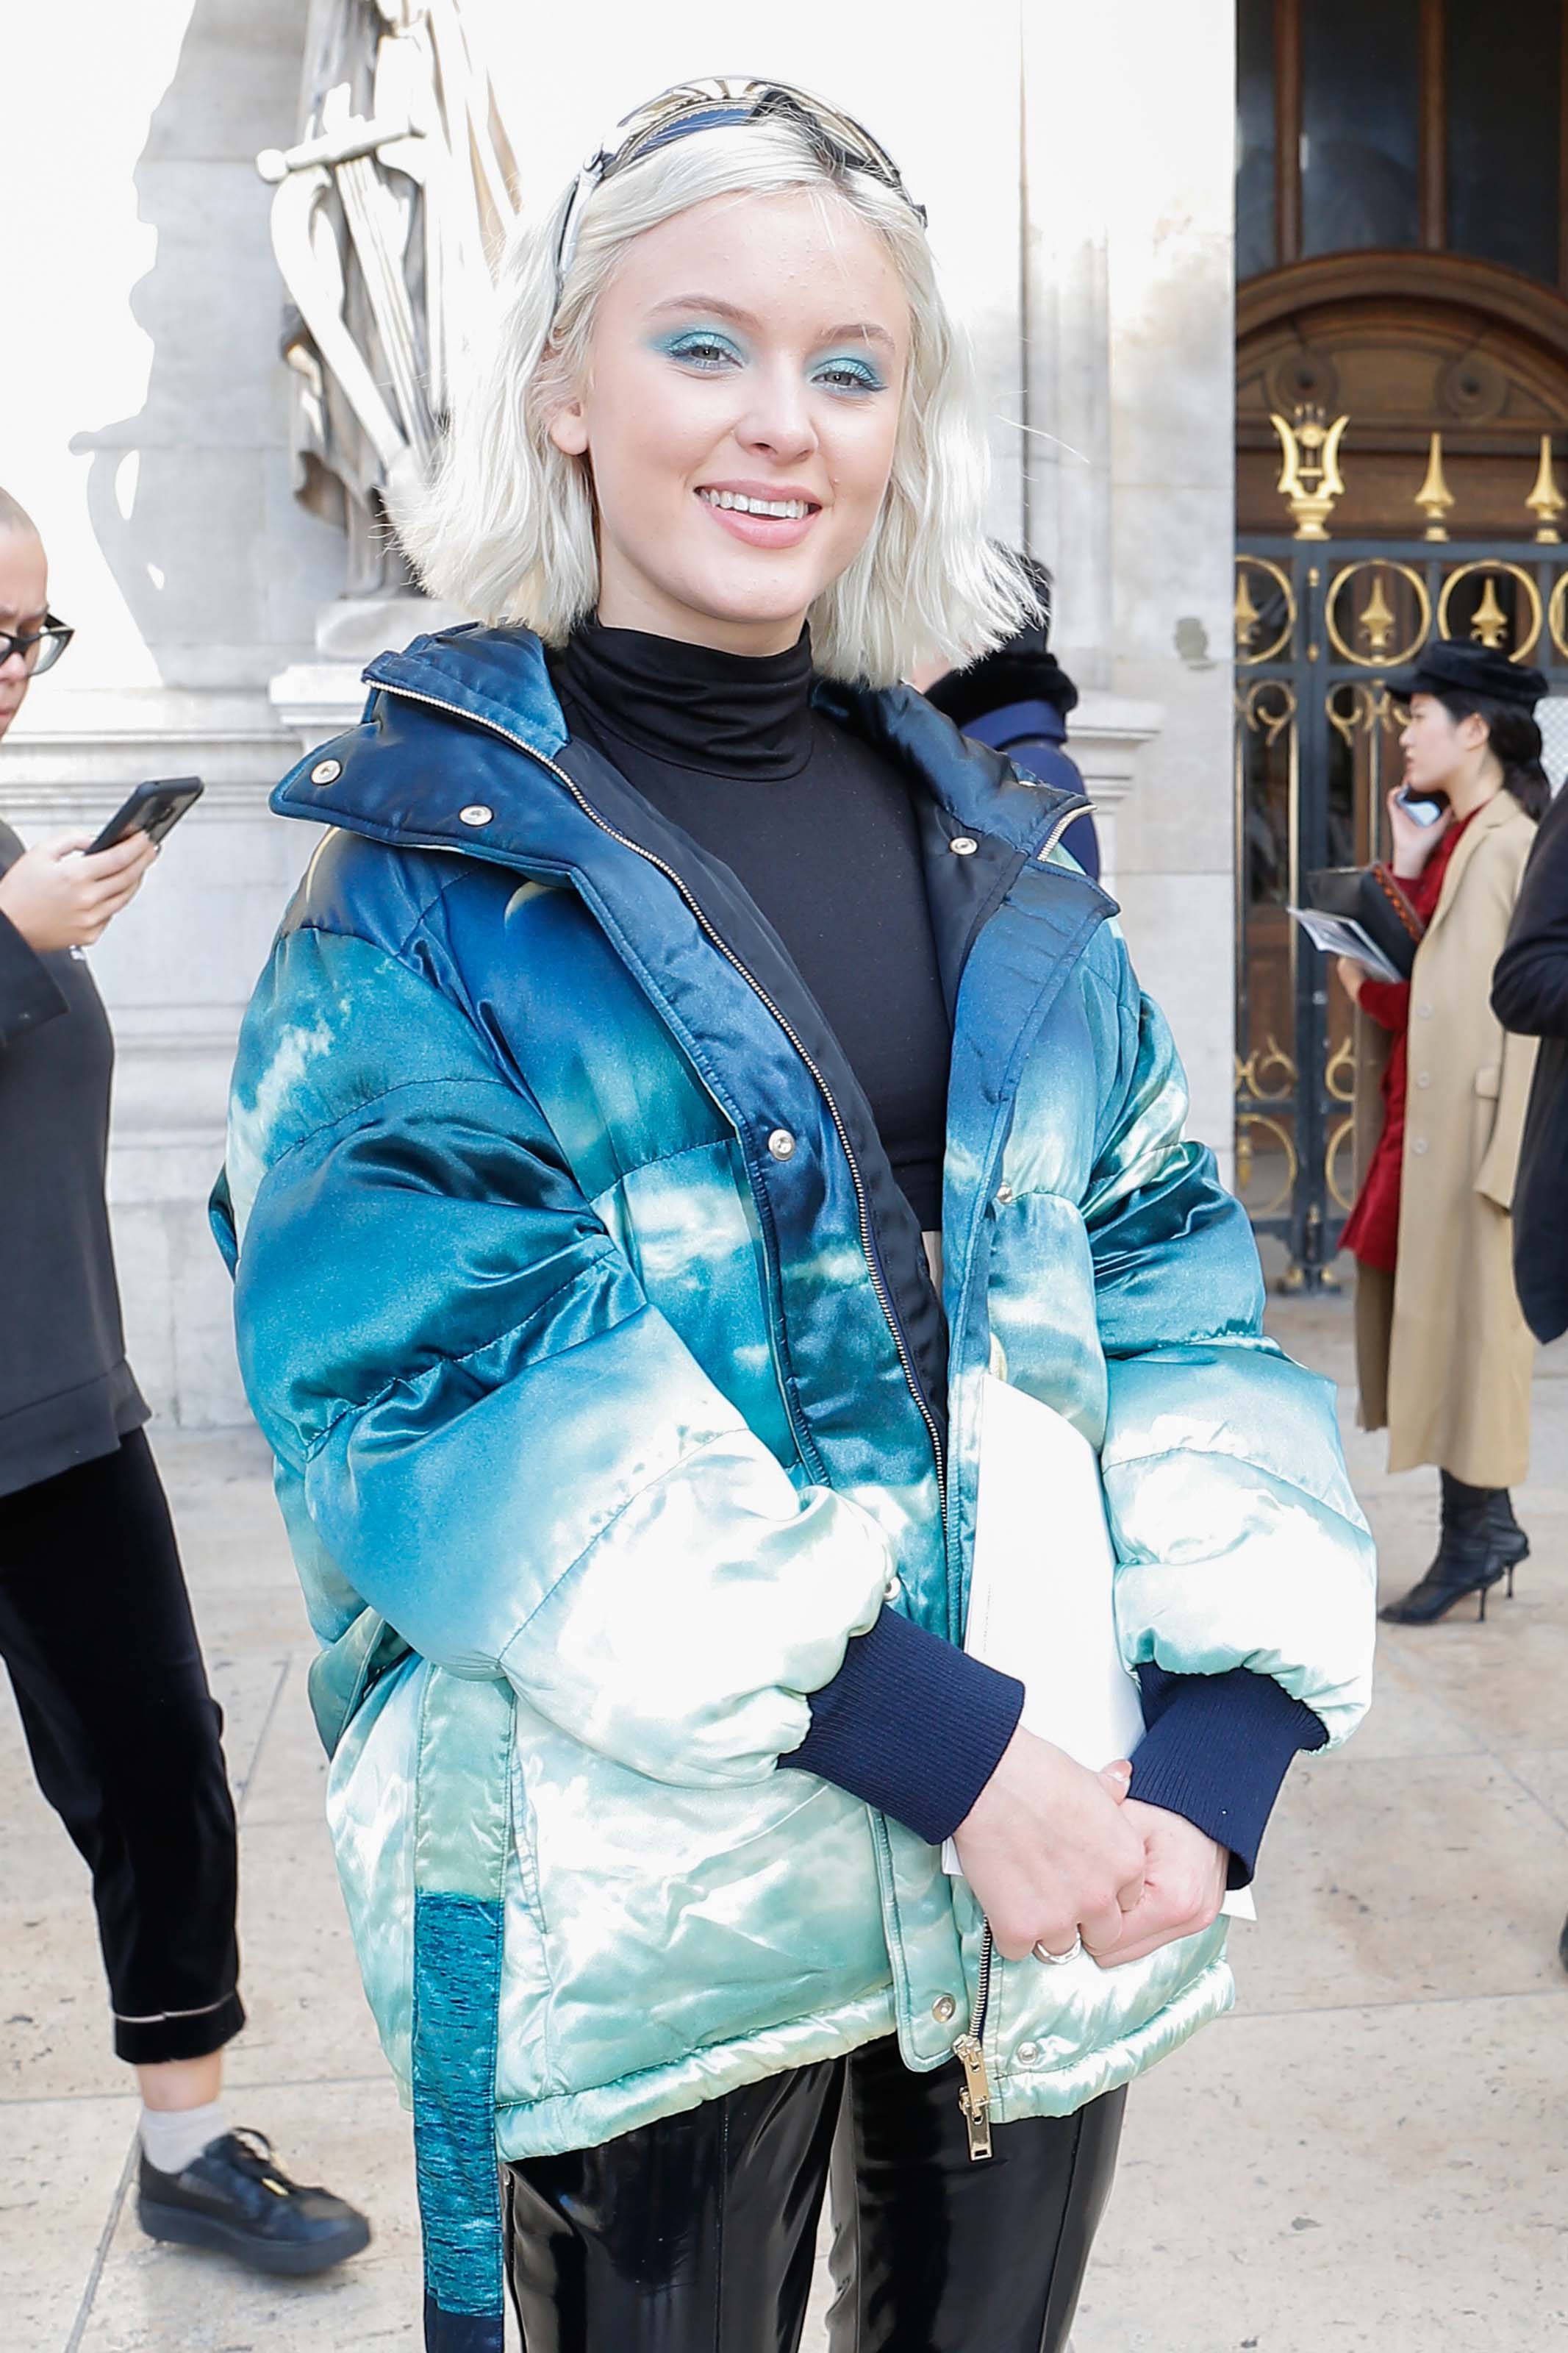 Zara Larsson attends Stella McCartney show in Paris